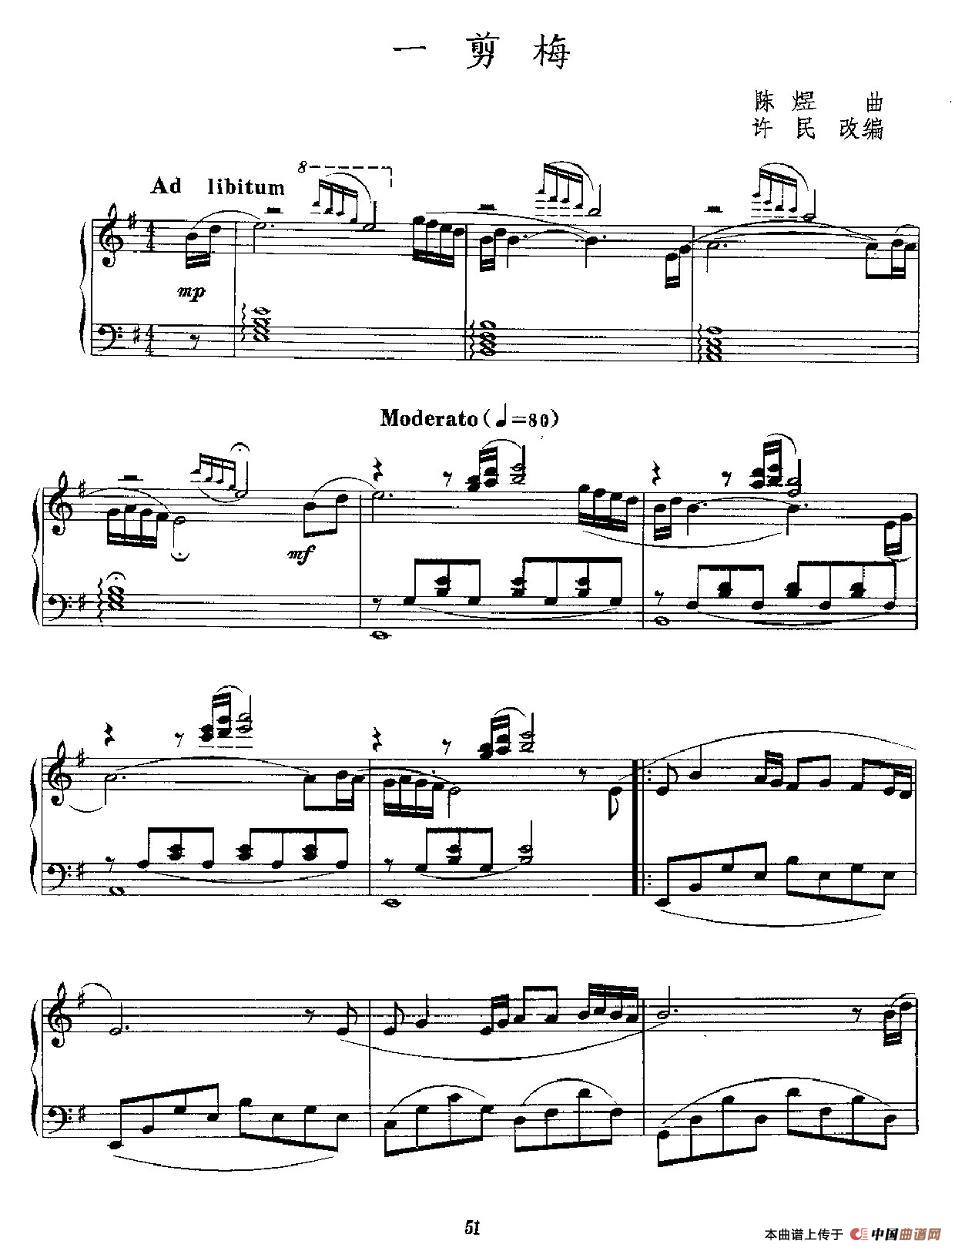 《一剪梅》钢琴曲谱图分享